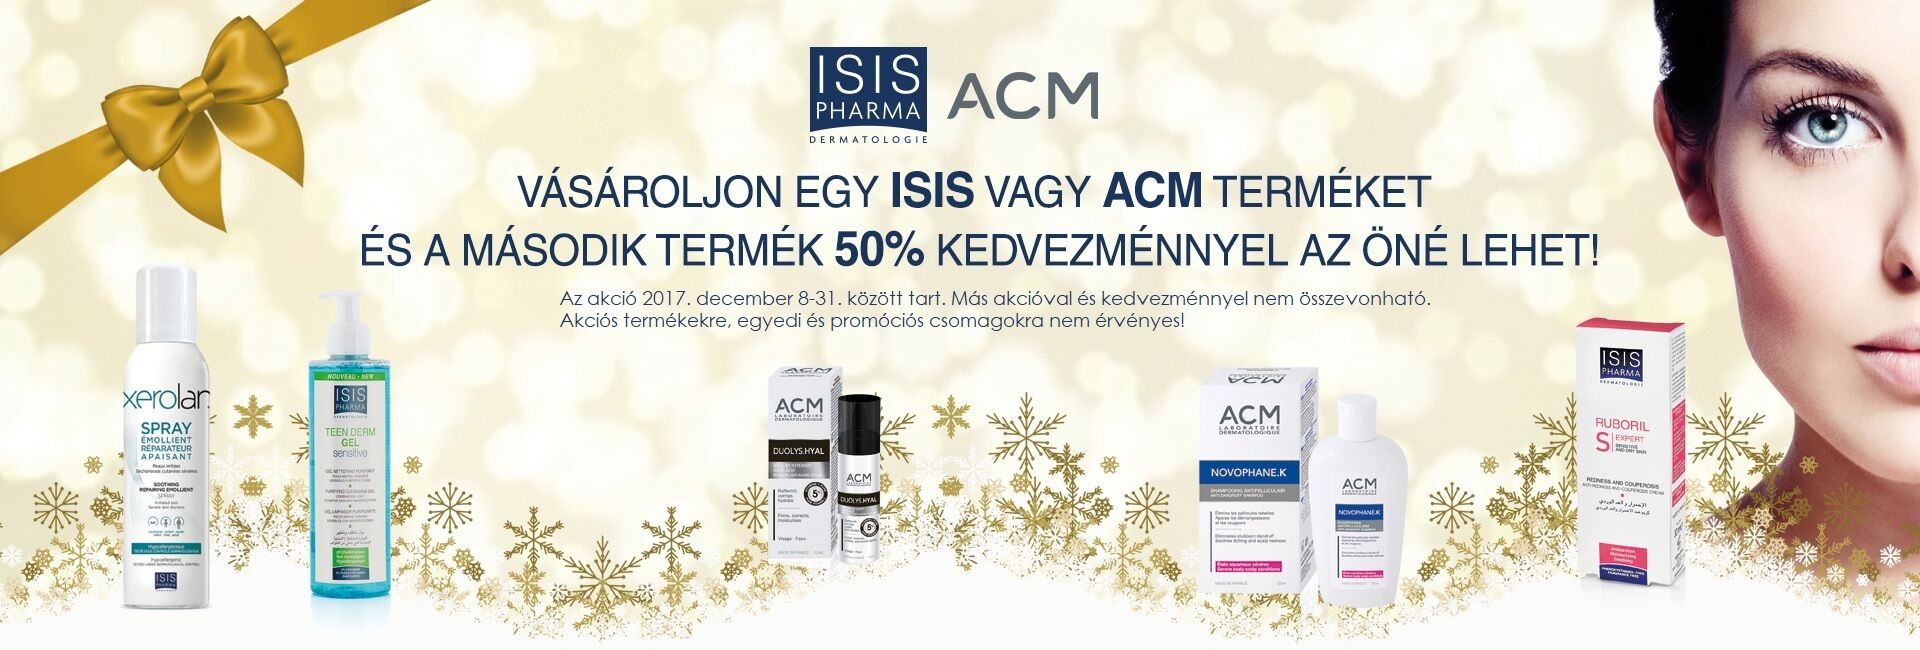 A 2. ACM vagy ISIS Pharma terméket 50% kedvezménnyel kínáljuk! 